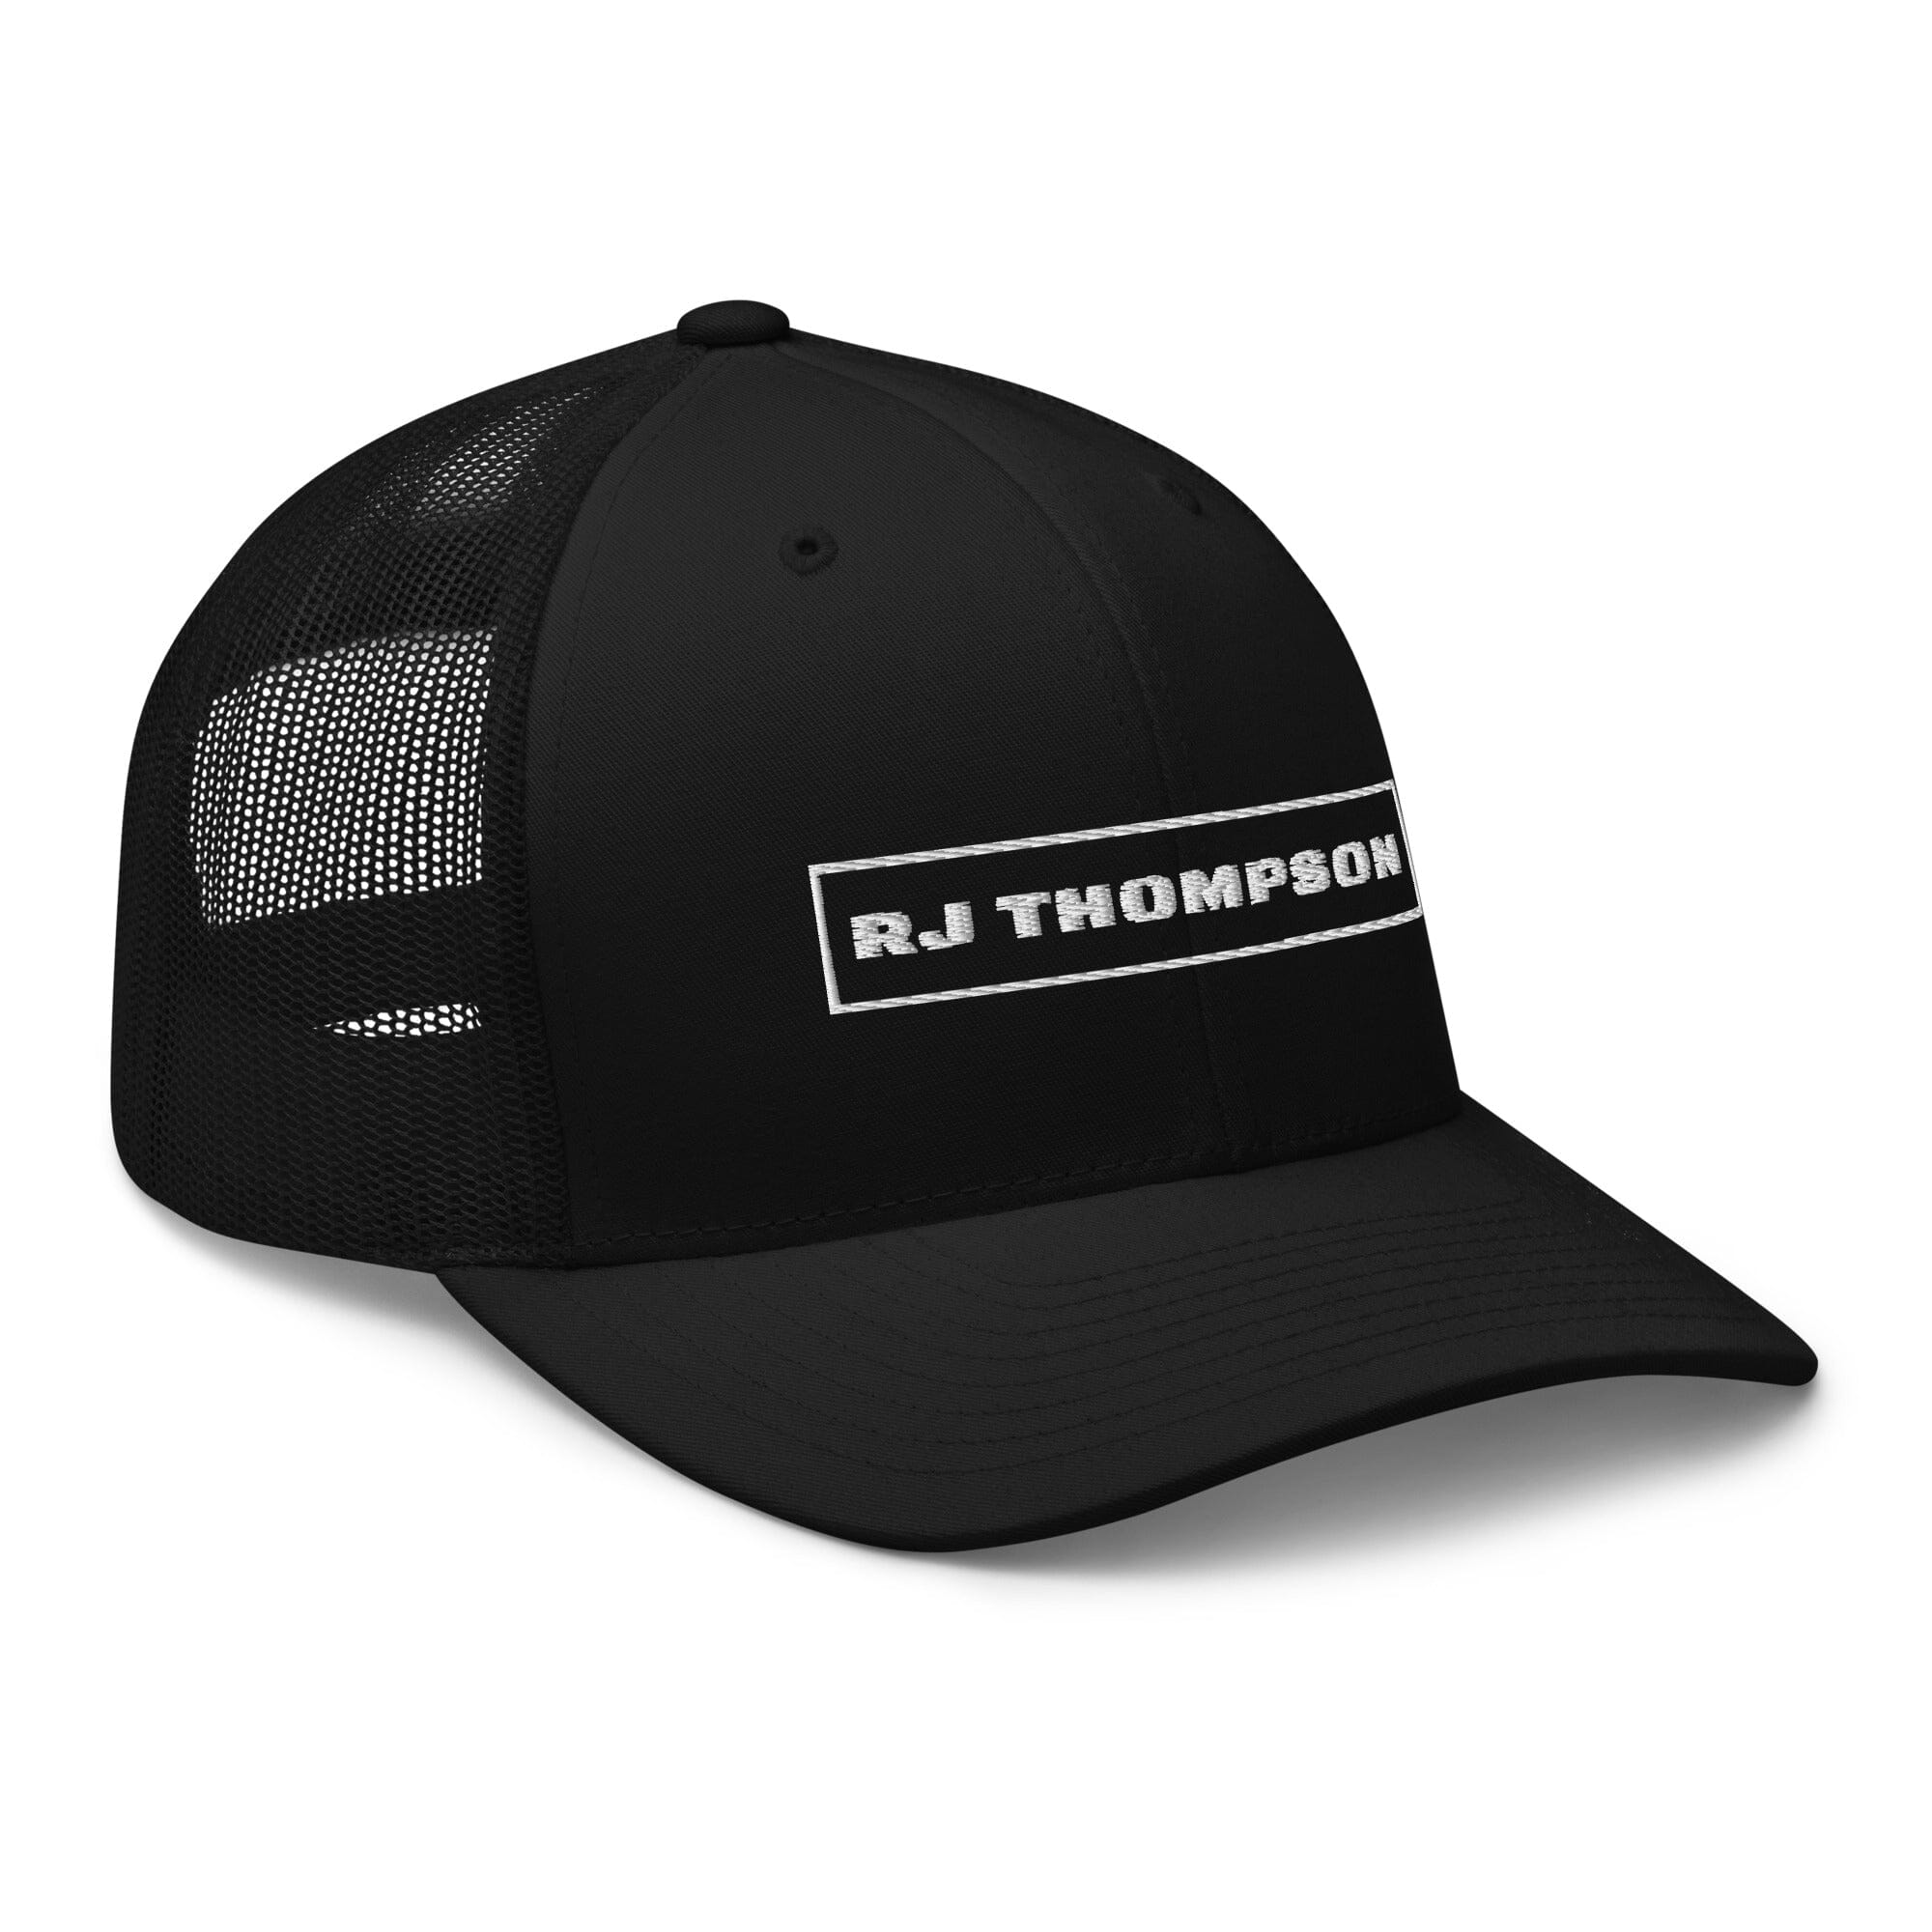 "RJ Thompson" Trucker Cap | RJ Thompson | Official Website & Store